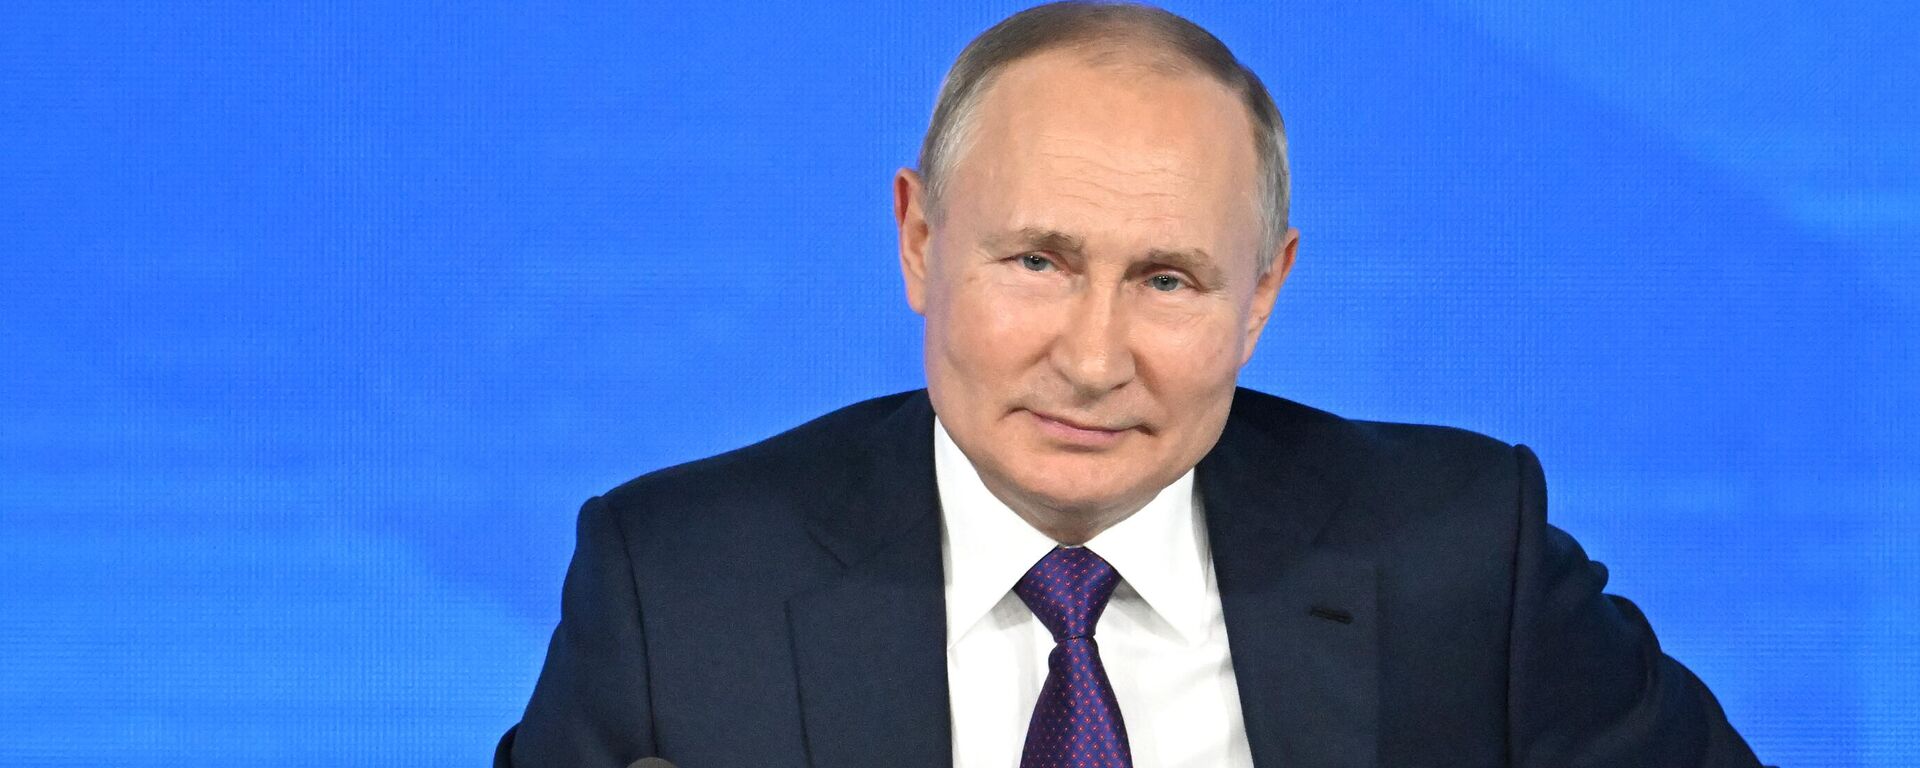 Vladímir Putin, presidente de Rusia, durante la gran conferencia de prensa anual en Moscú (Rusia), el 23 de diciembre del 2021 - Sputnik Mundo, 1920, 02.02.2022